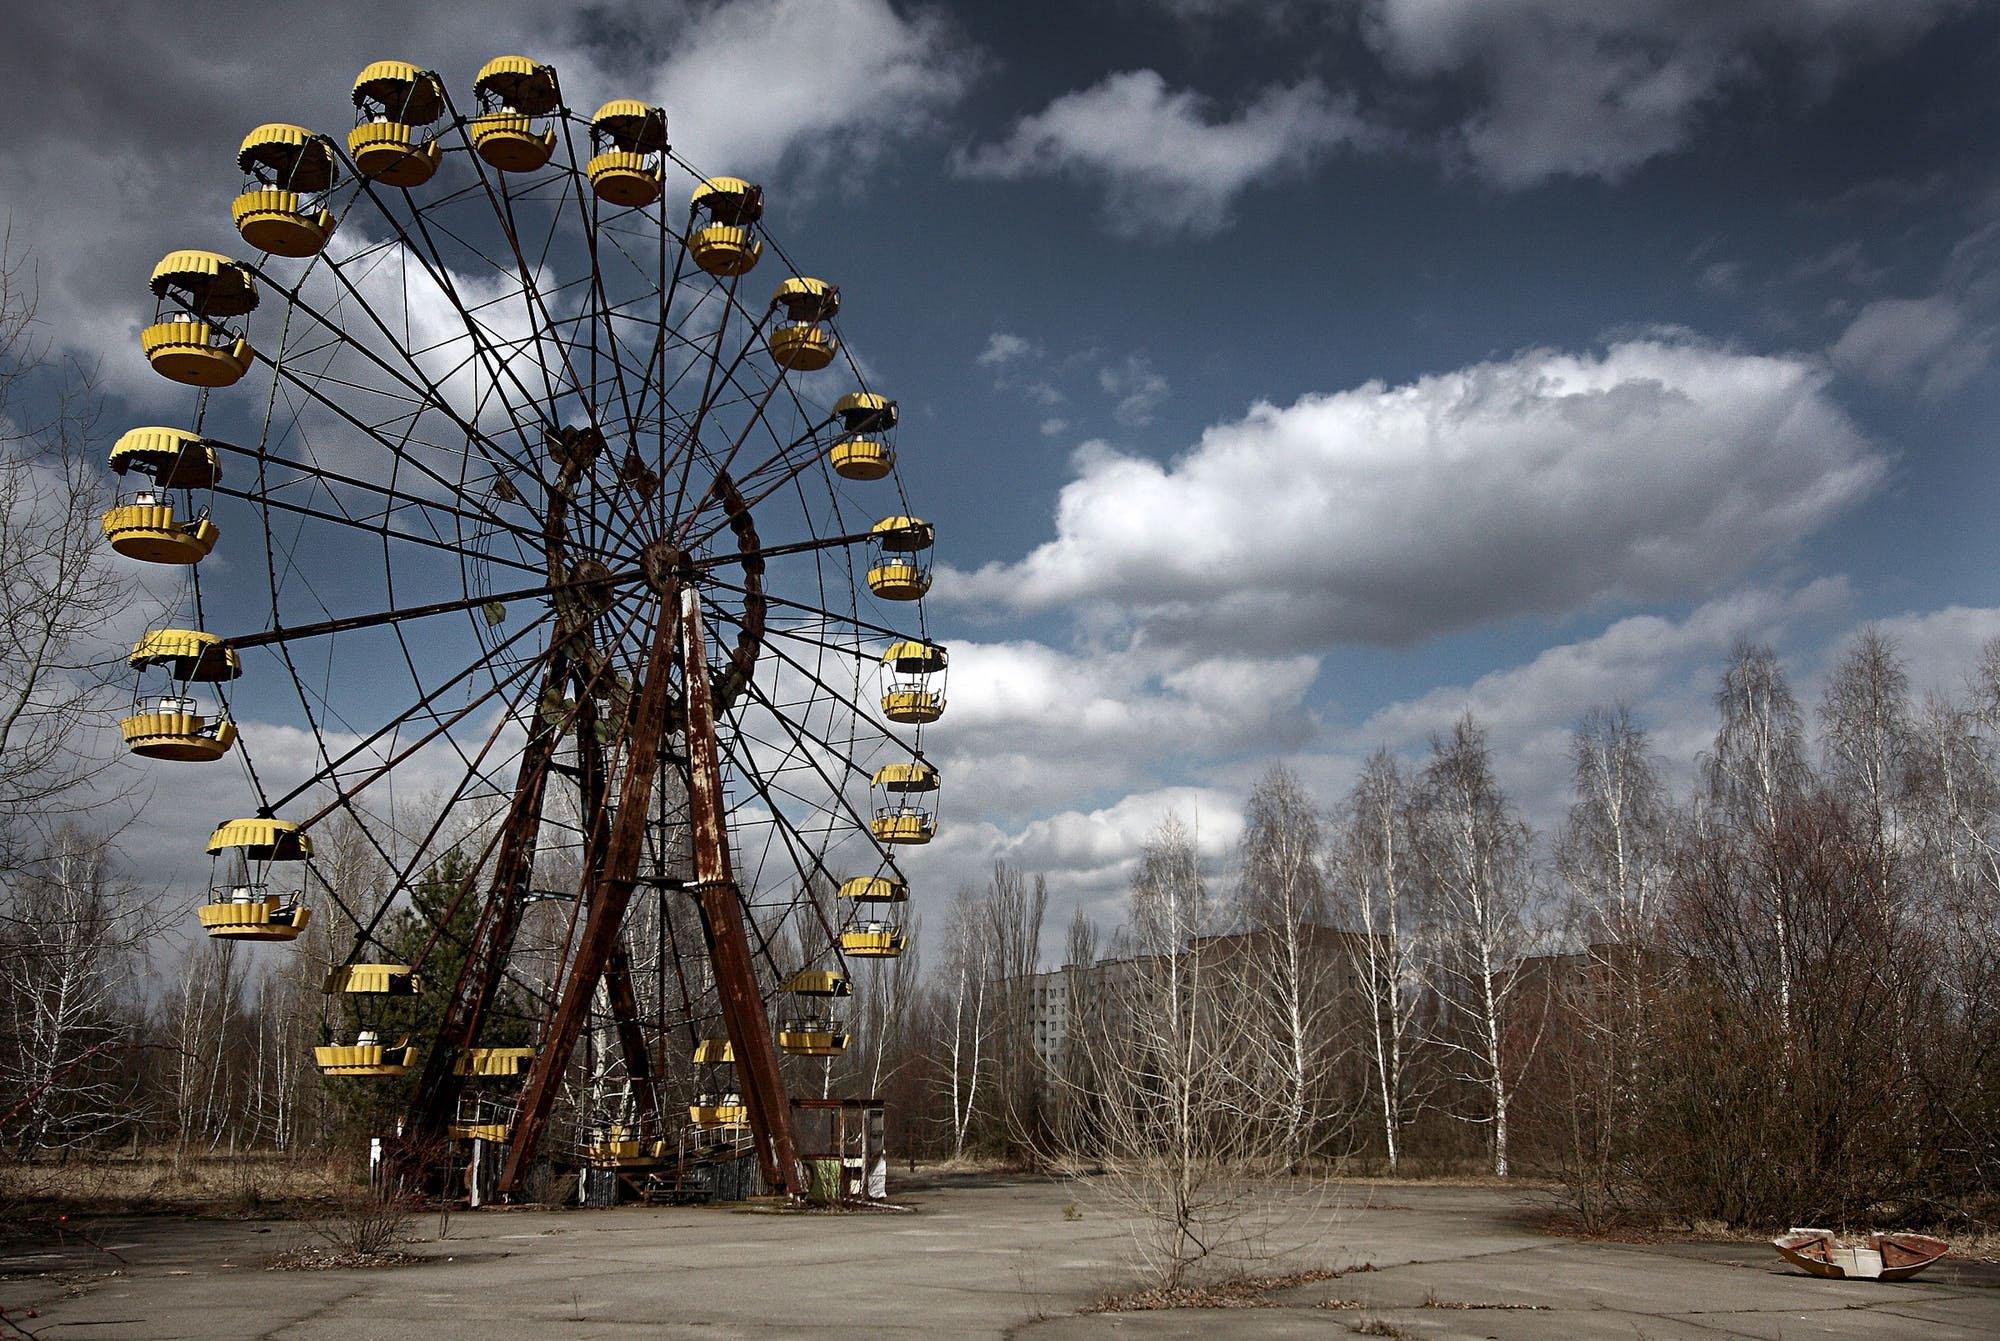 Http chernobyl. Чернобыльская АЭС колесо обозрения. Колесо обозрения Припять 1986. Припять зона отчуждения. Чернобыль Припять.